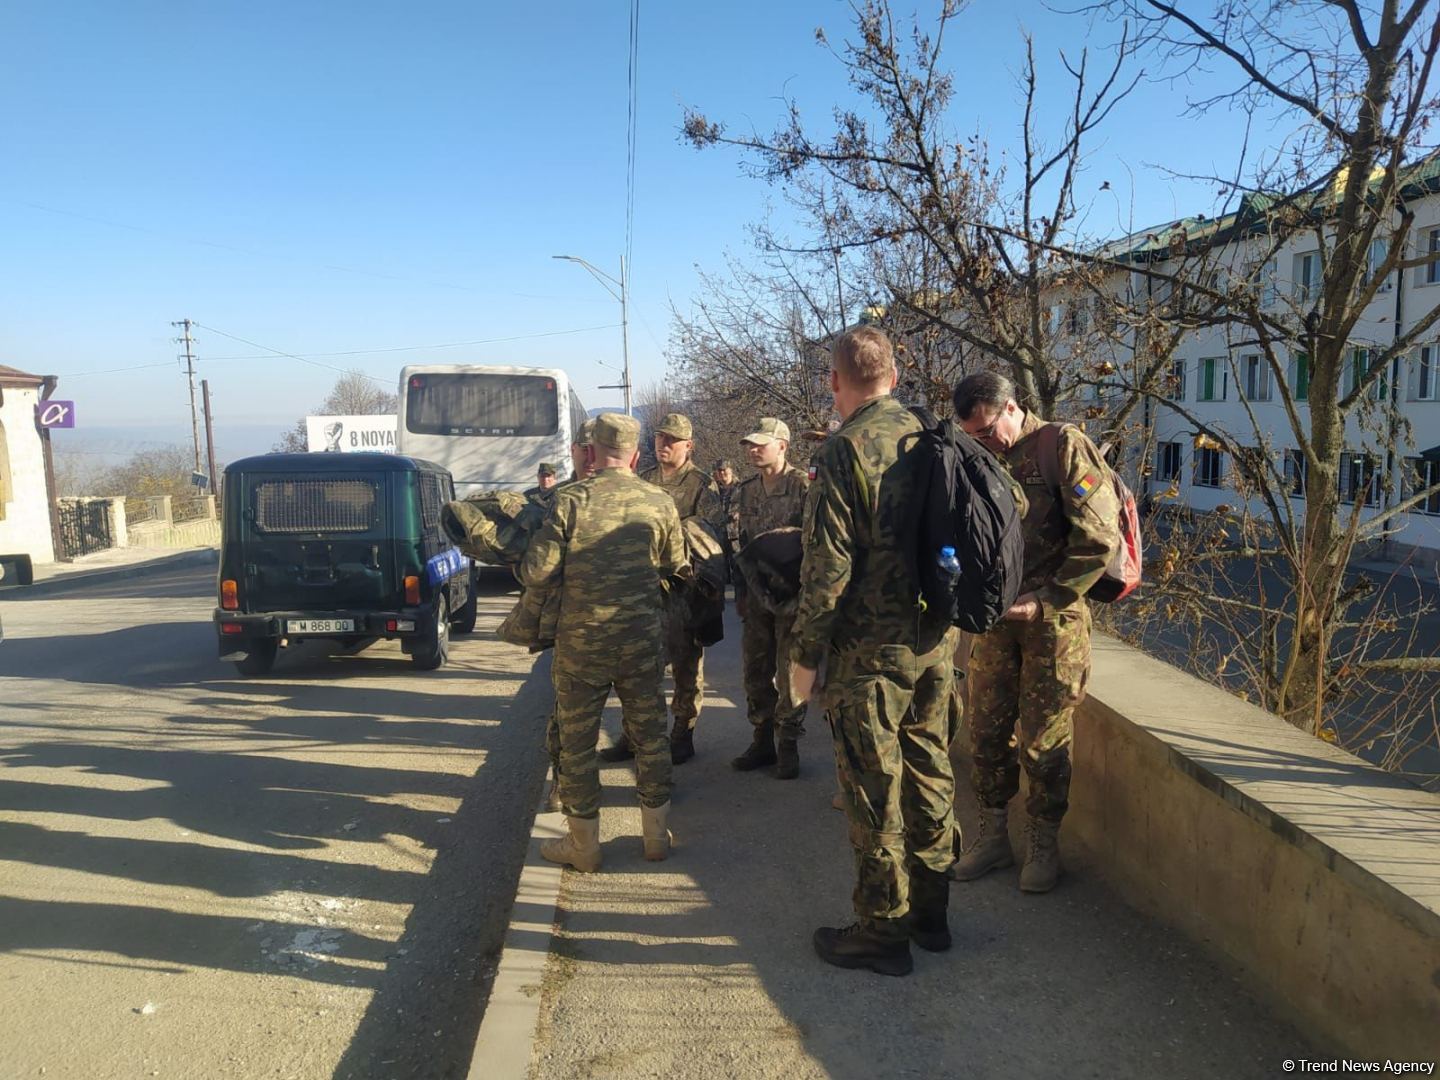 Hərbi attaşelər və media nümayəndələri Sarıbaba istiqamətində mina sahəsinə baxış keçiriblər (FOTO) (ƏLAVƏ OLUNUB)